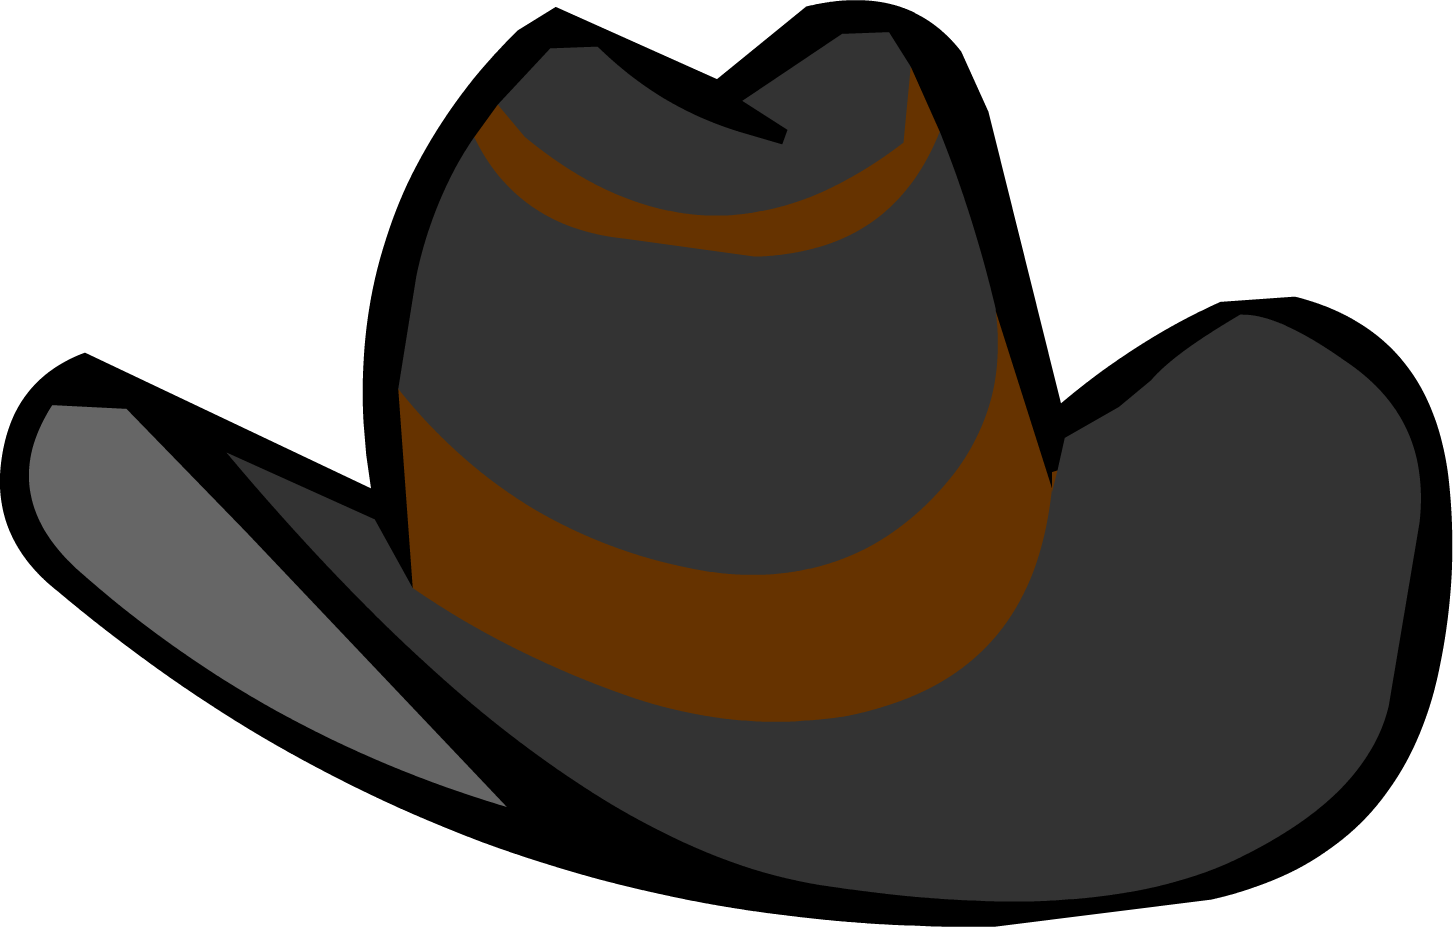 Cowboy hat png clipart